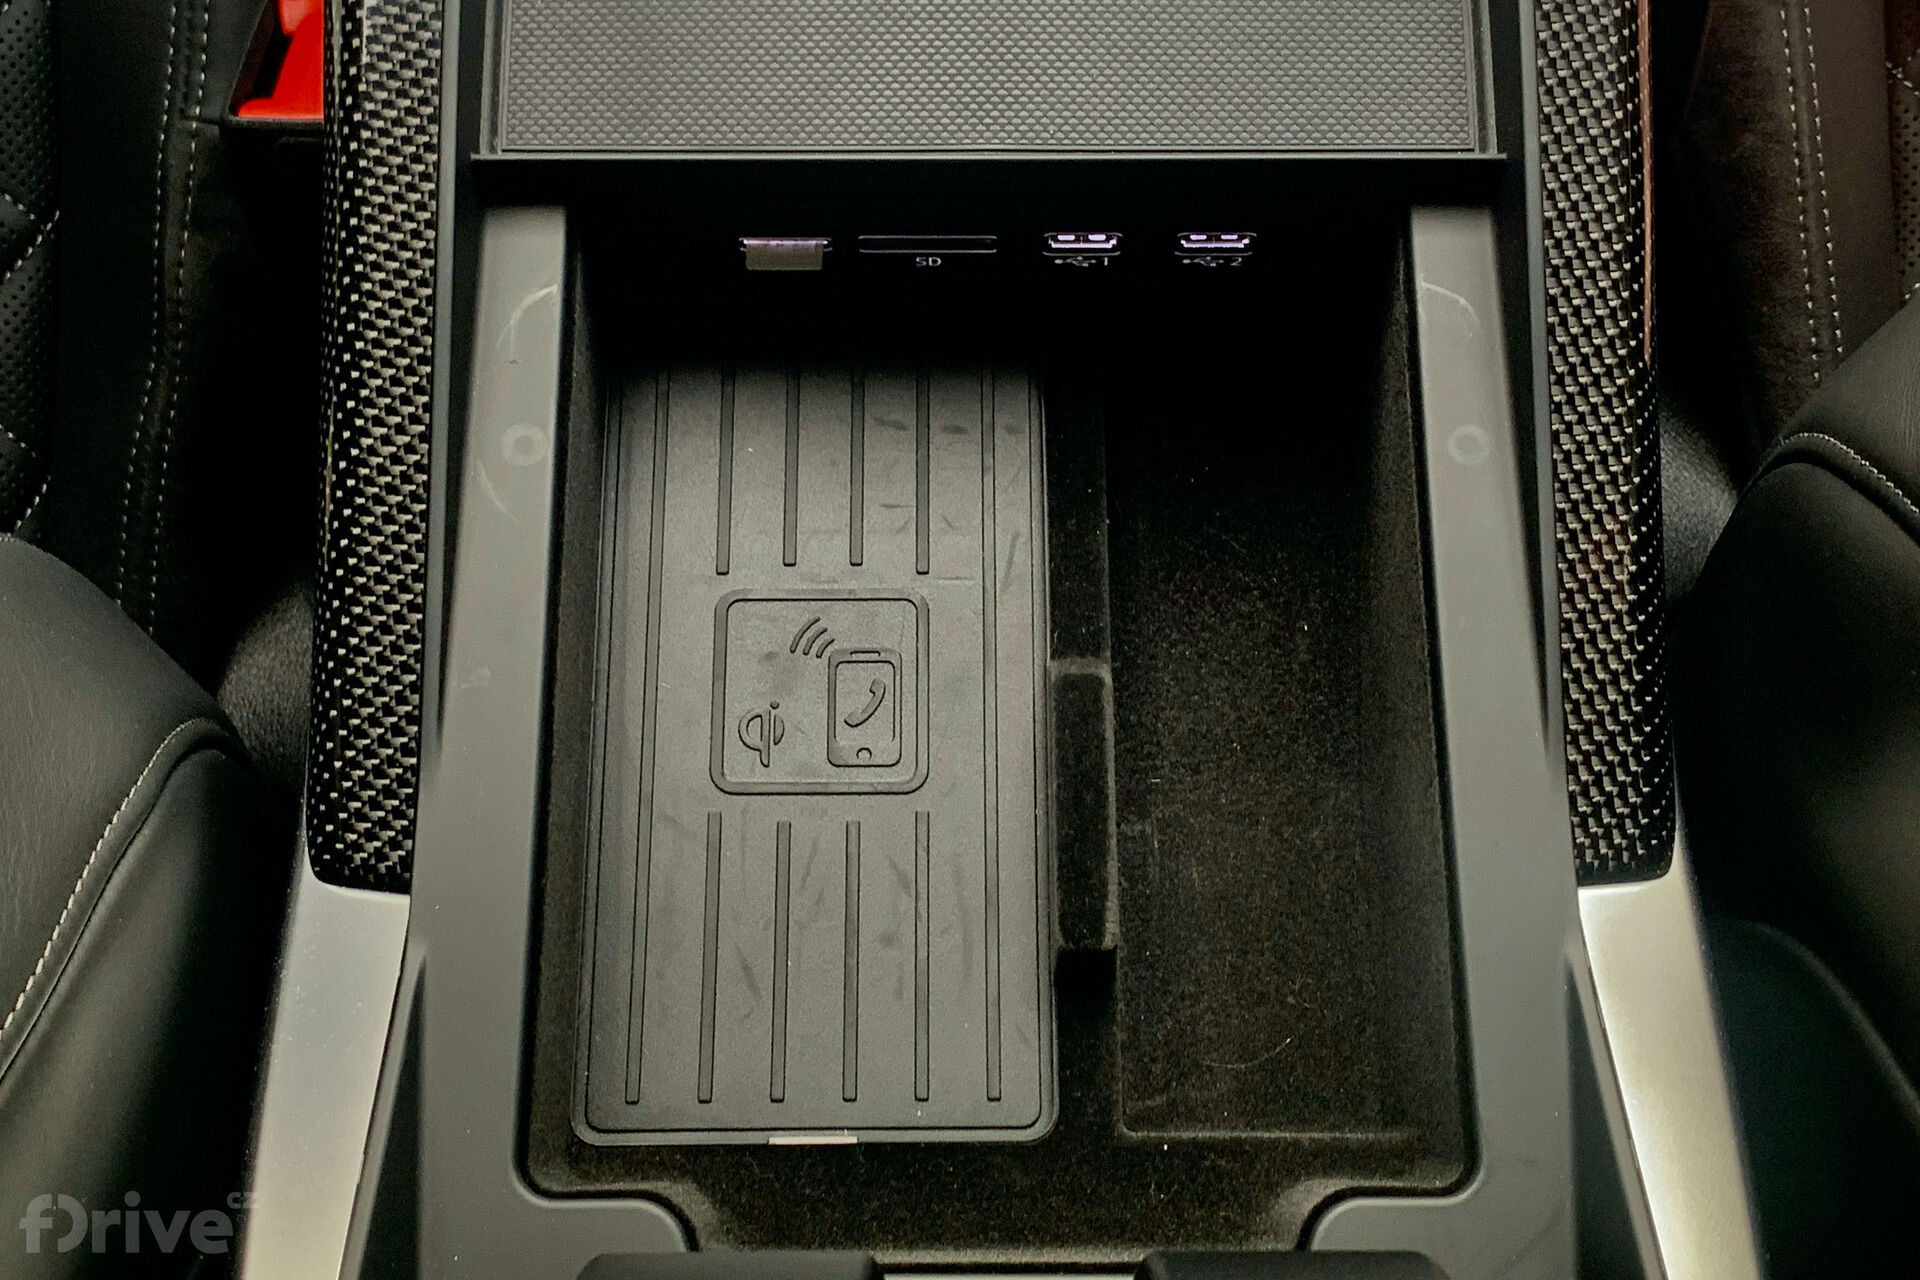 Bezdrátové Apple CarPlay v Audi SQ7